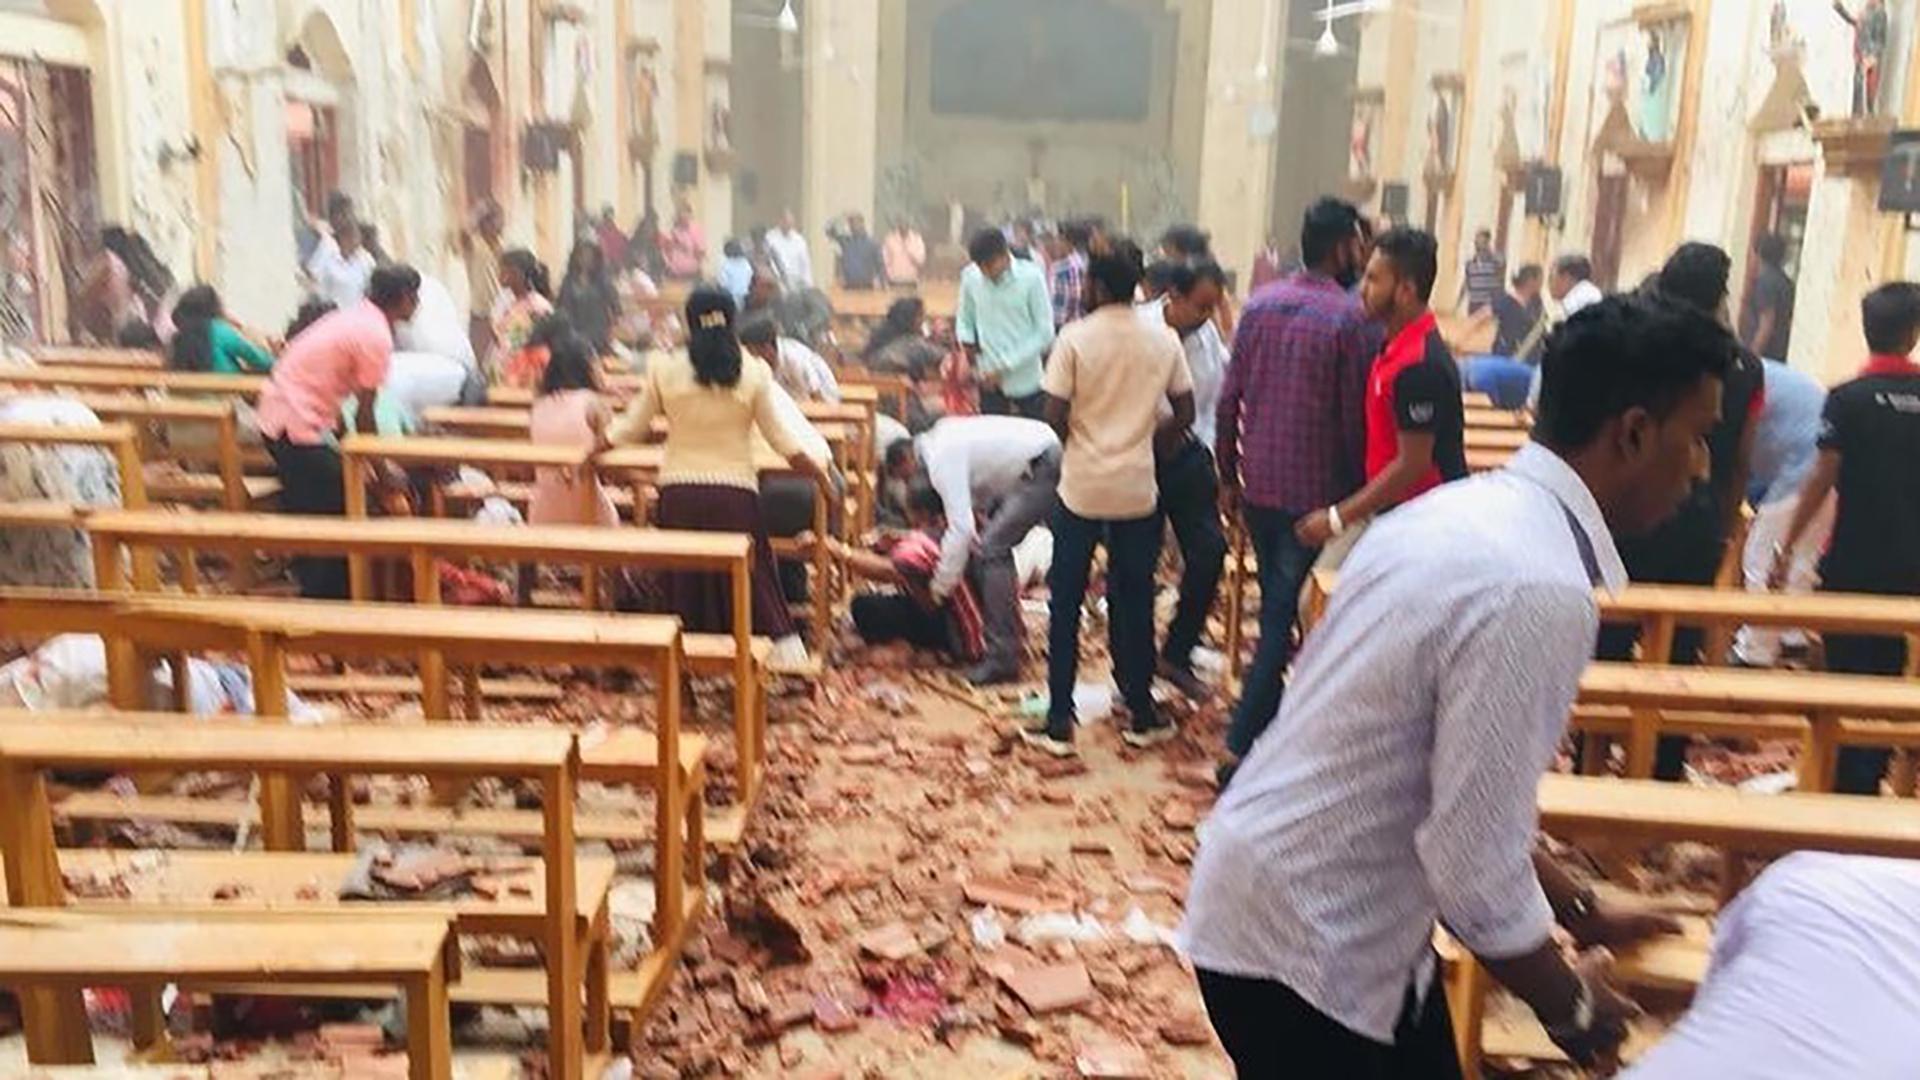 Interior de una de las iglesias atacadas en Sri Lanka